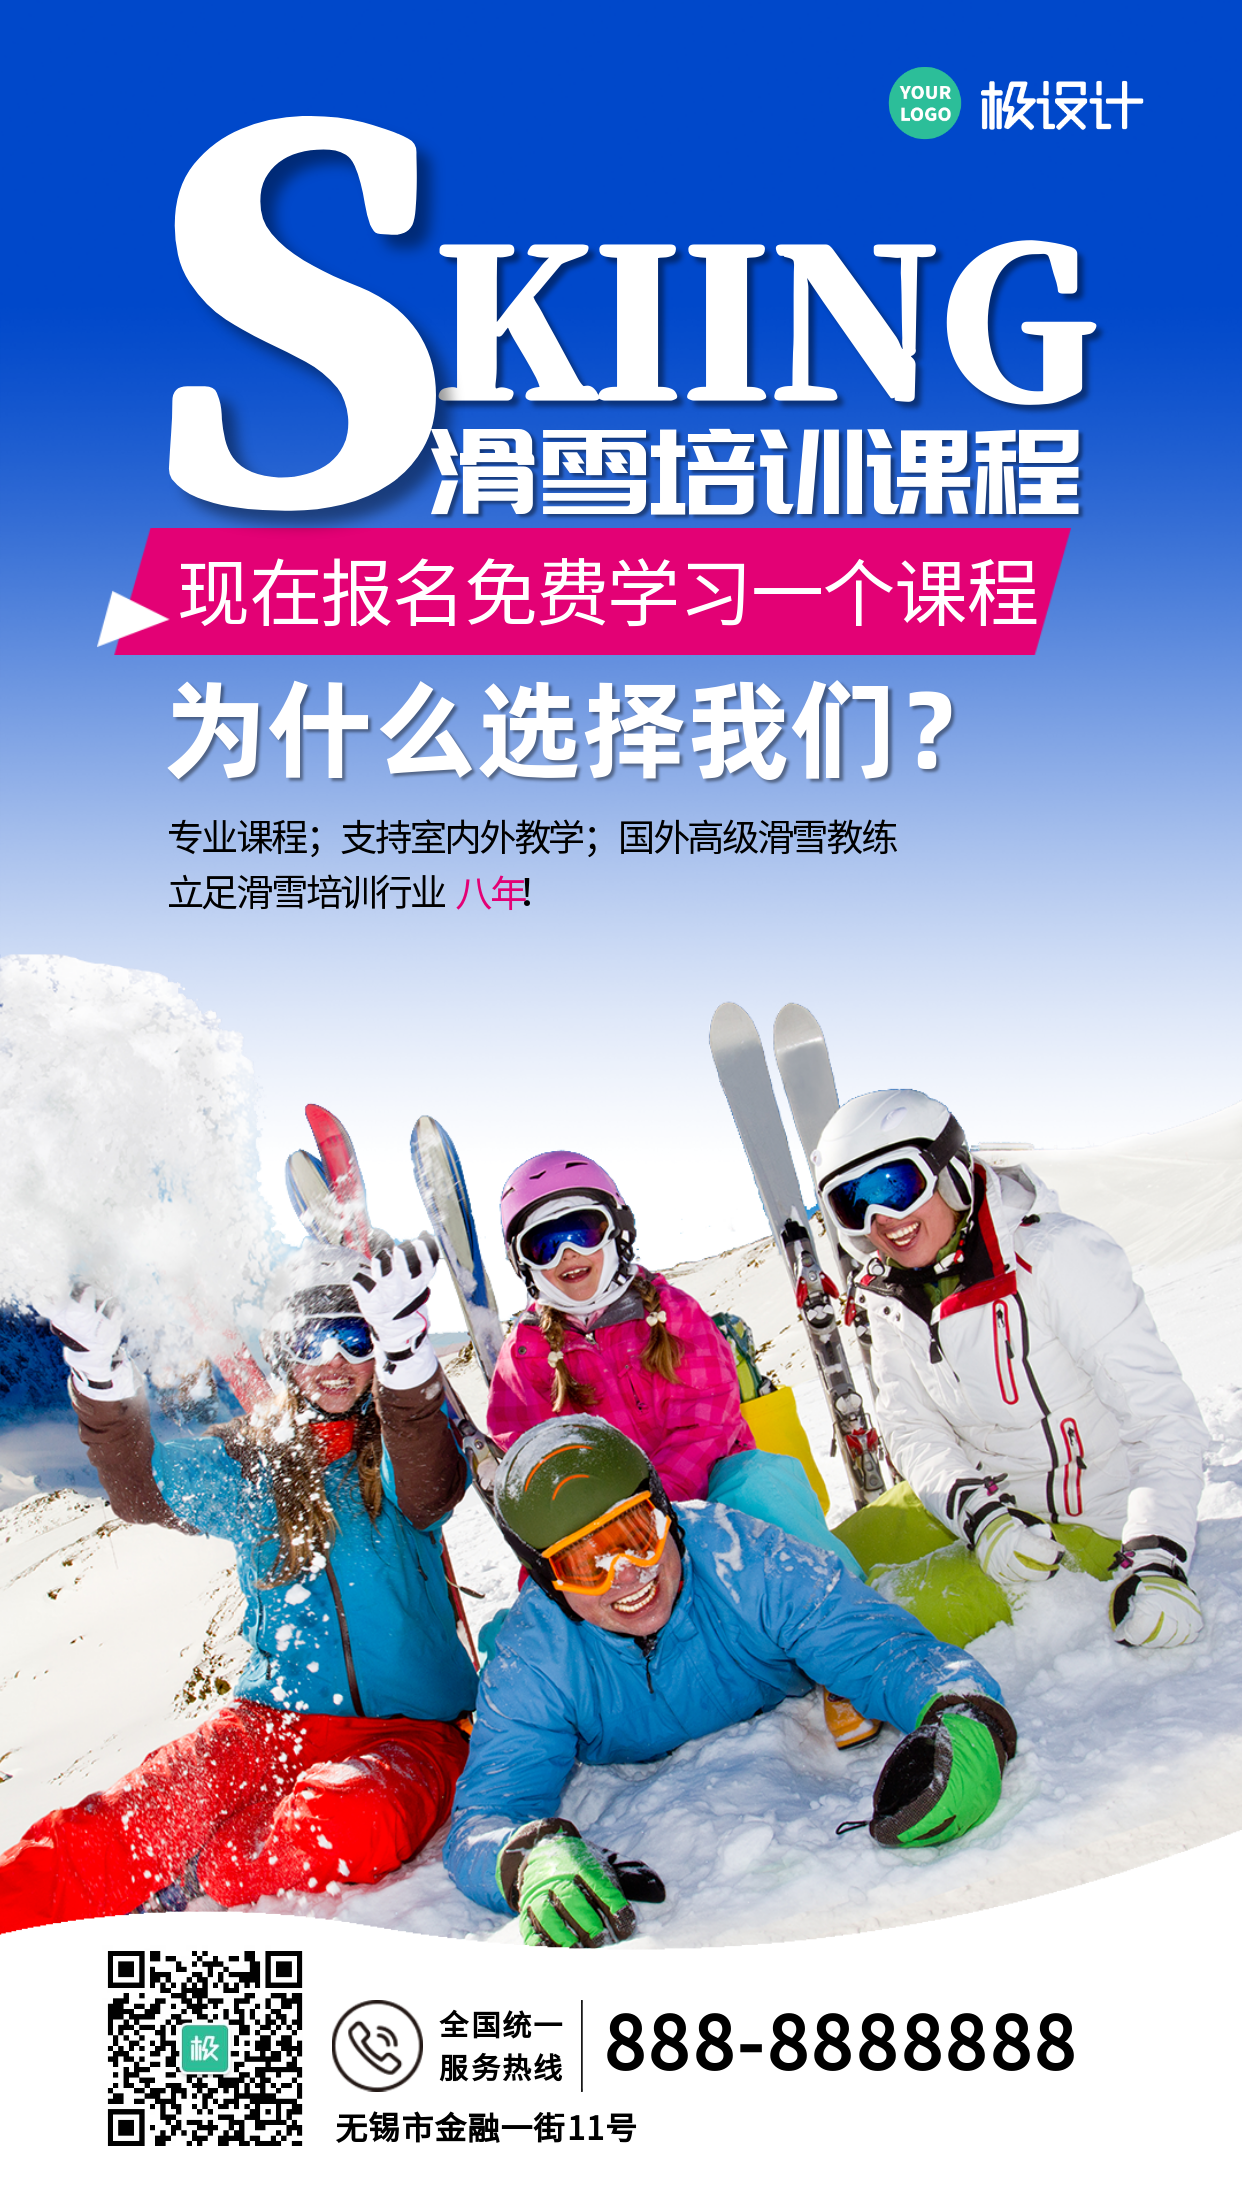 免费体验滑雪课程